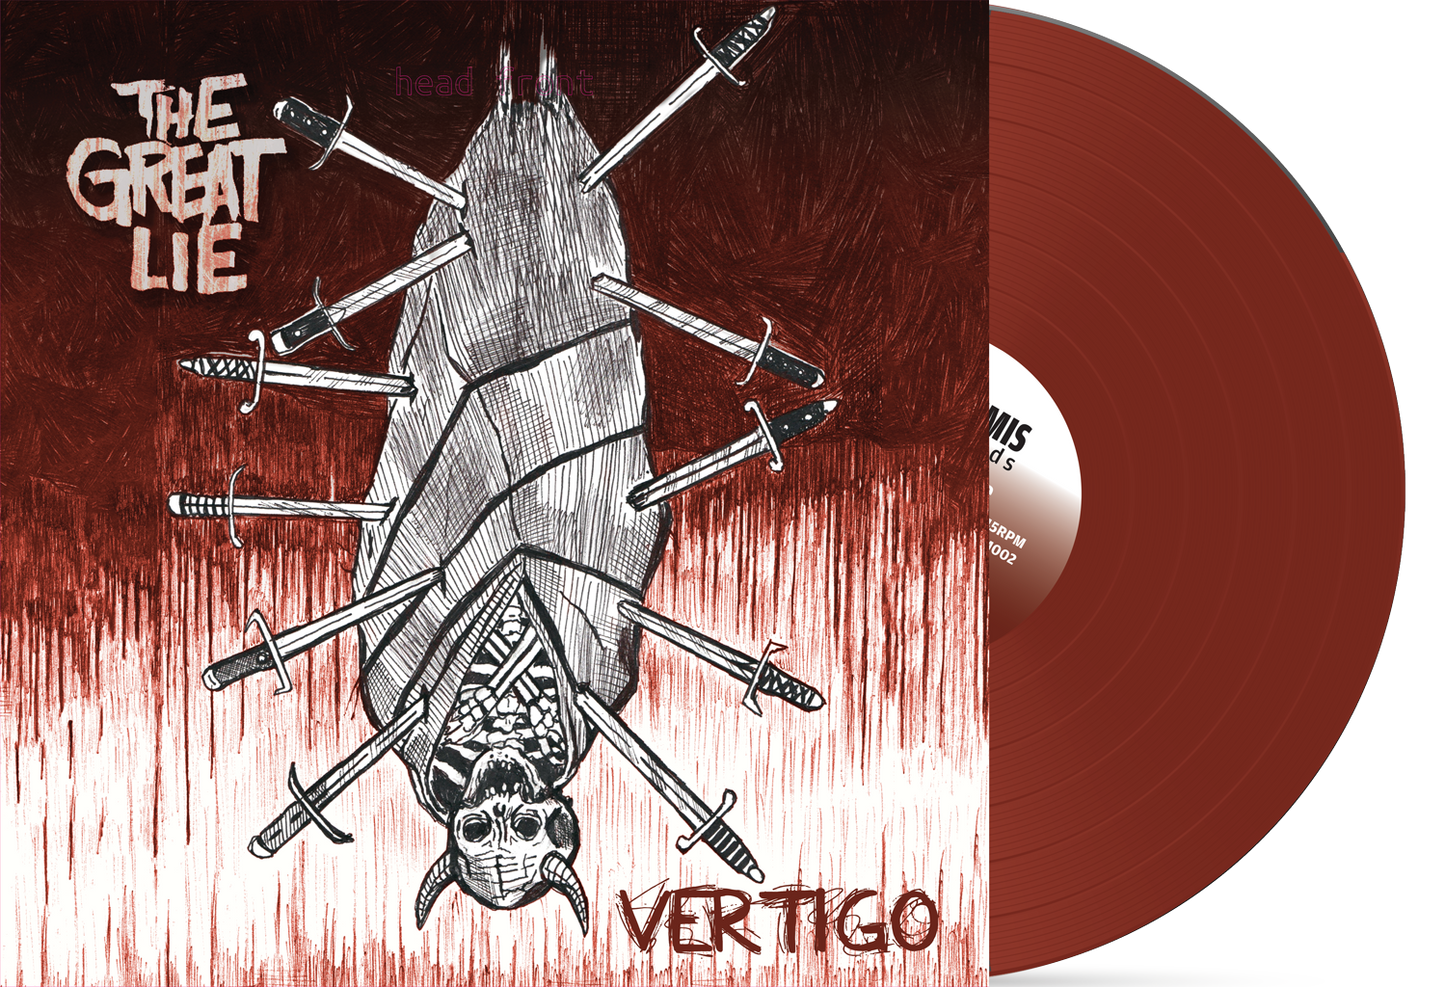 The Great Lie-"Vertigo" EP (LEM002)